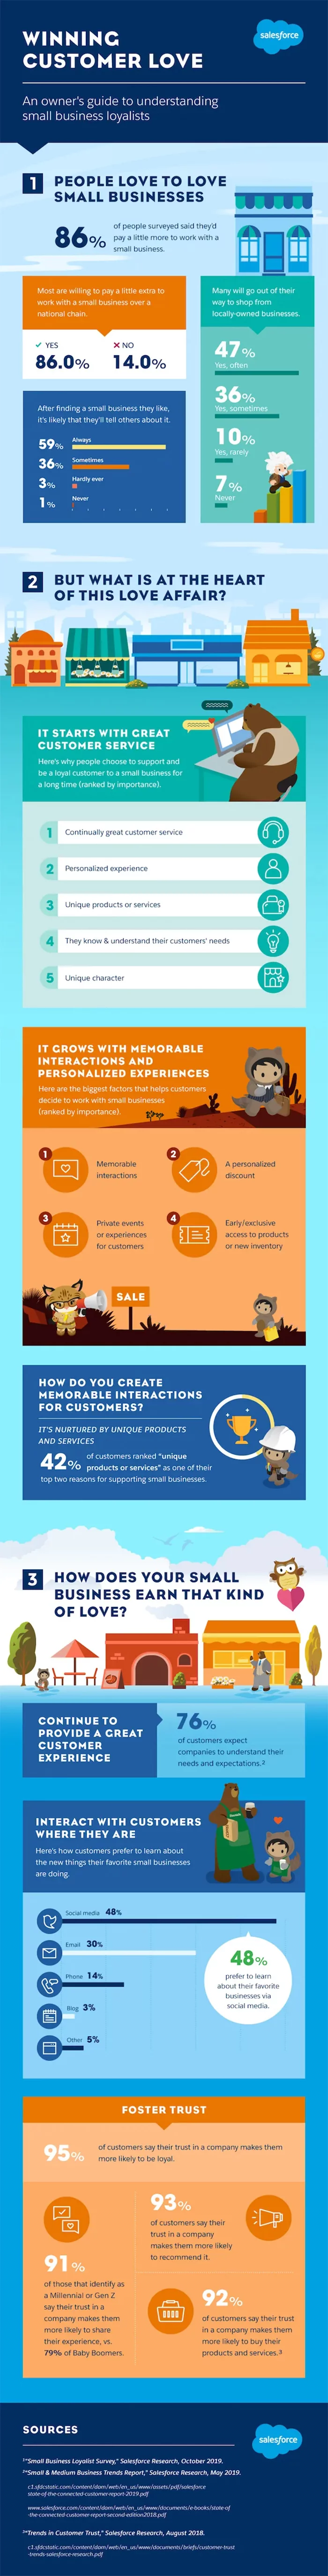 Winning Customer Love infographic